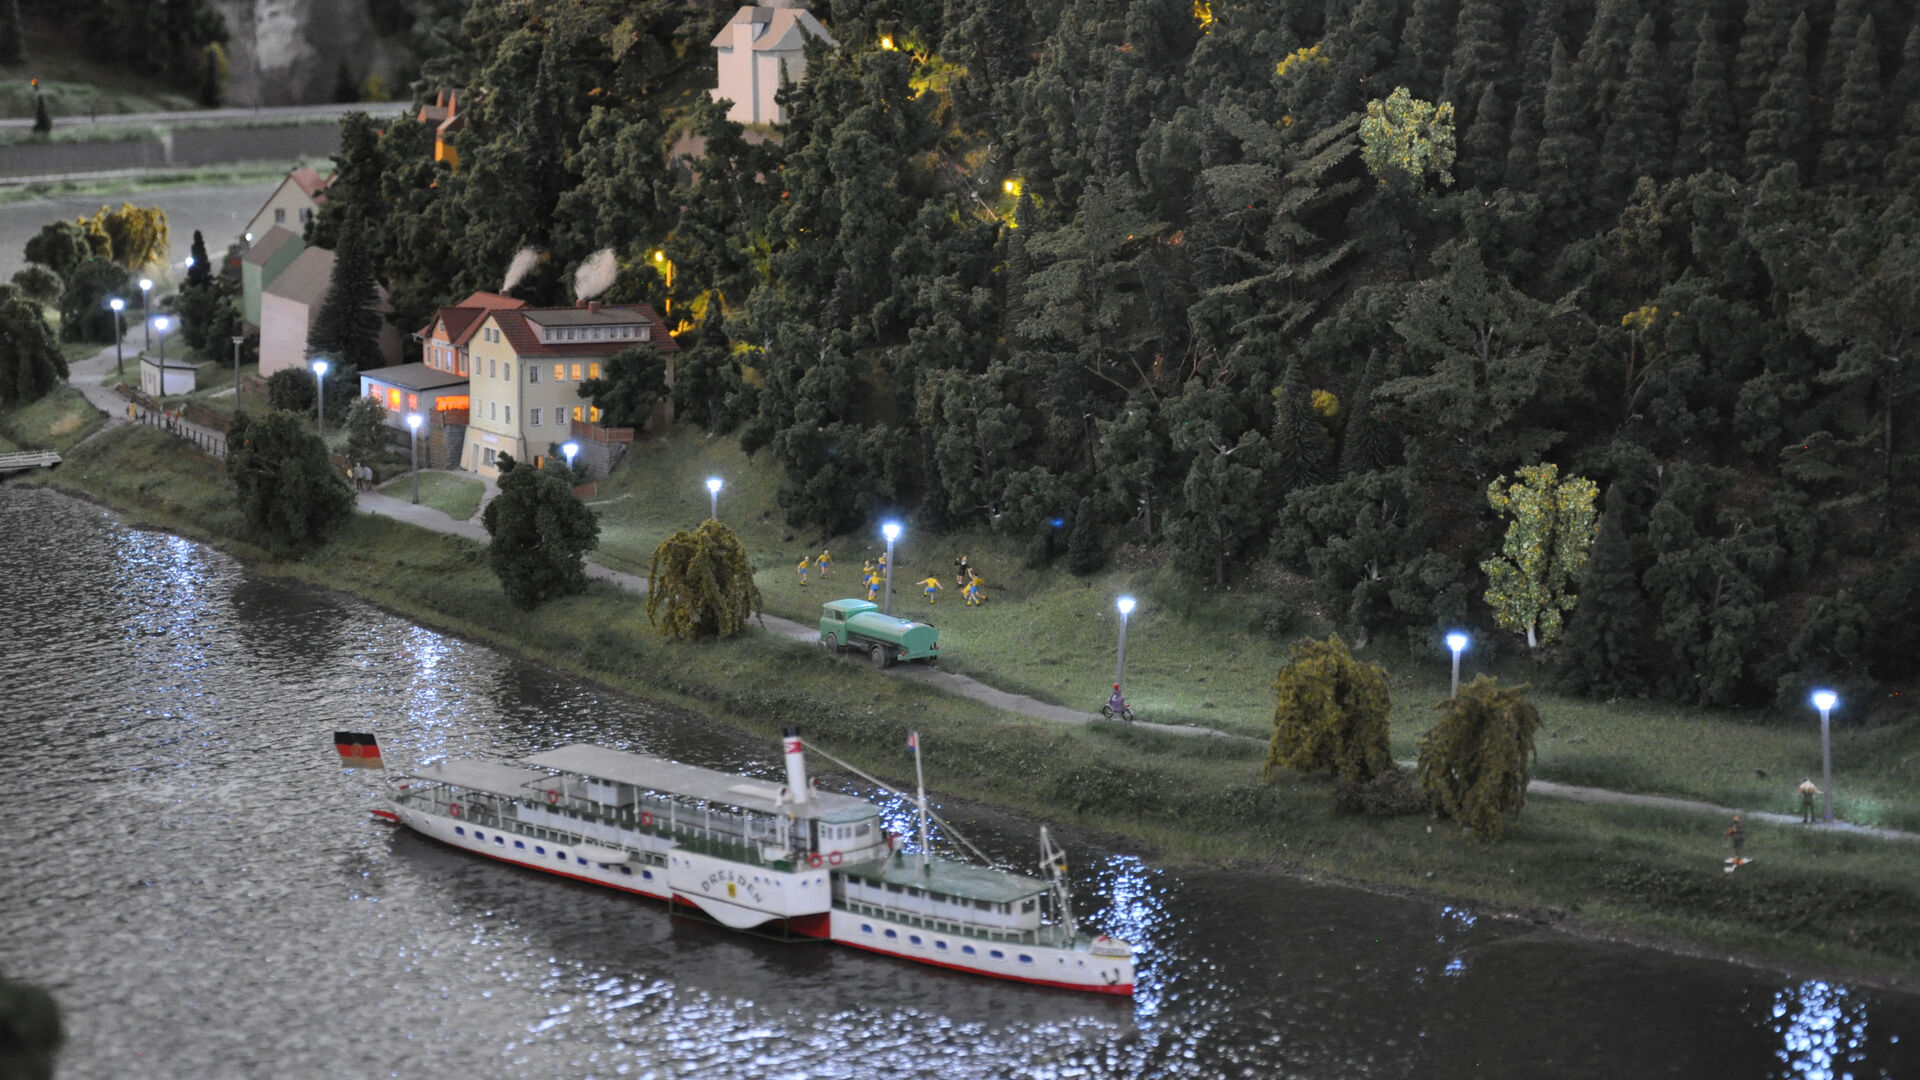 Schiff auf Elbe 
© Miniaturelbtal Königstein